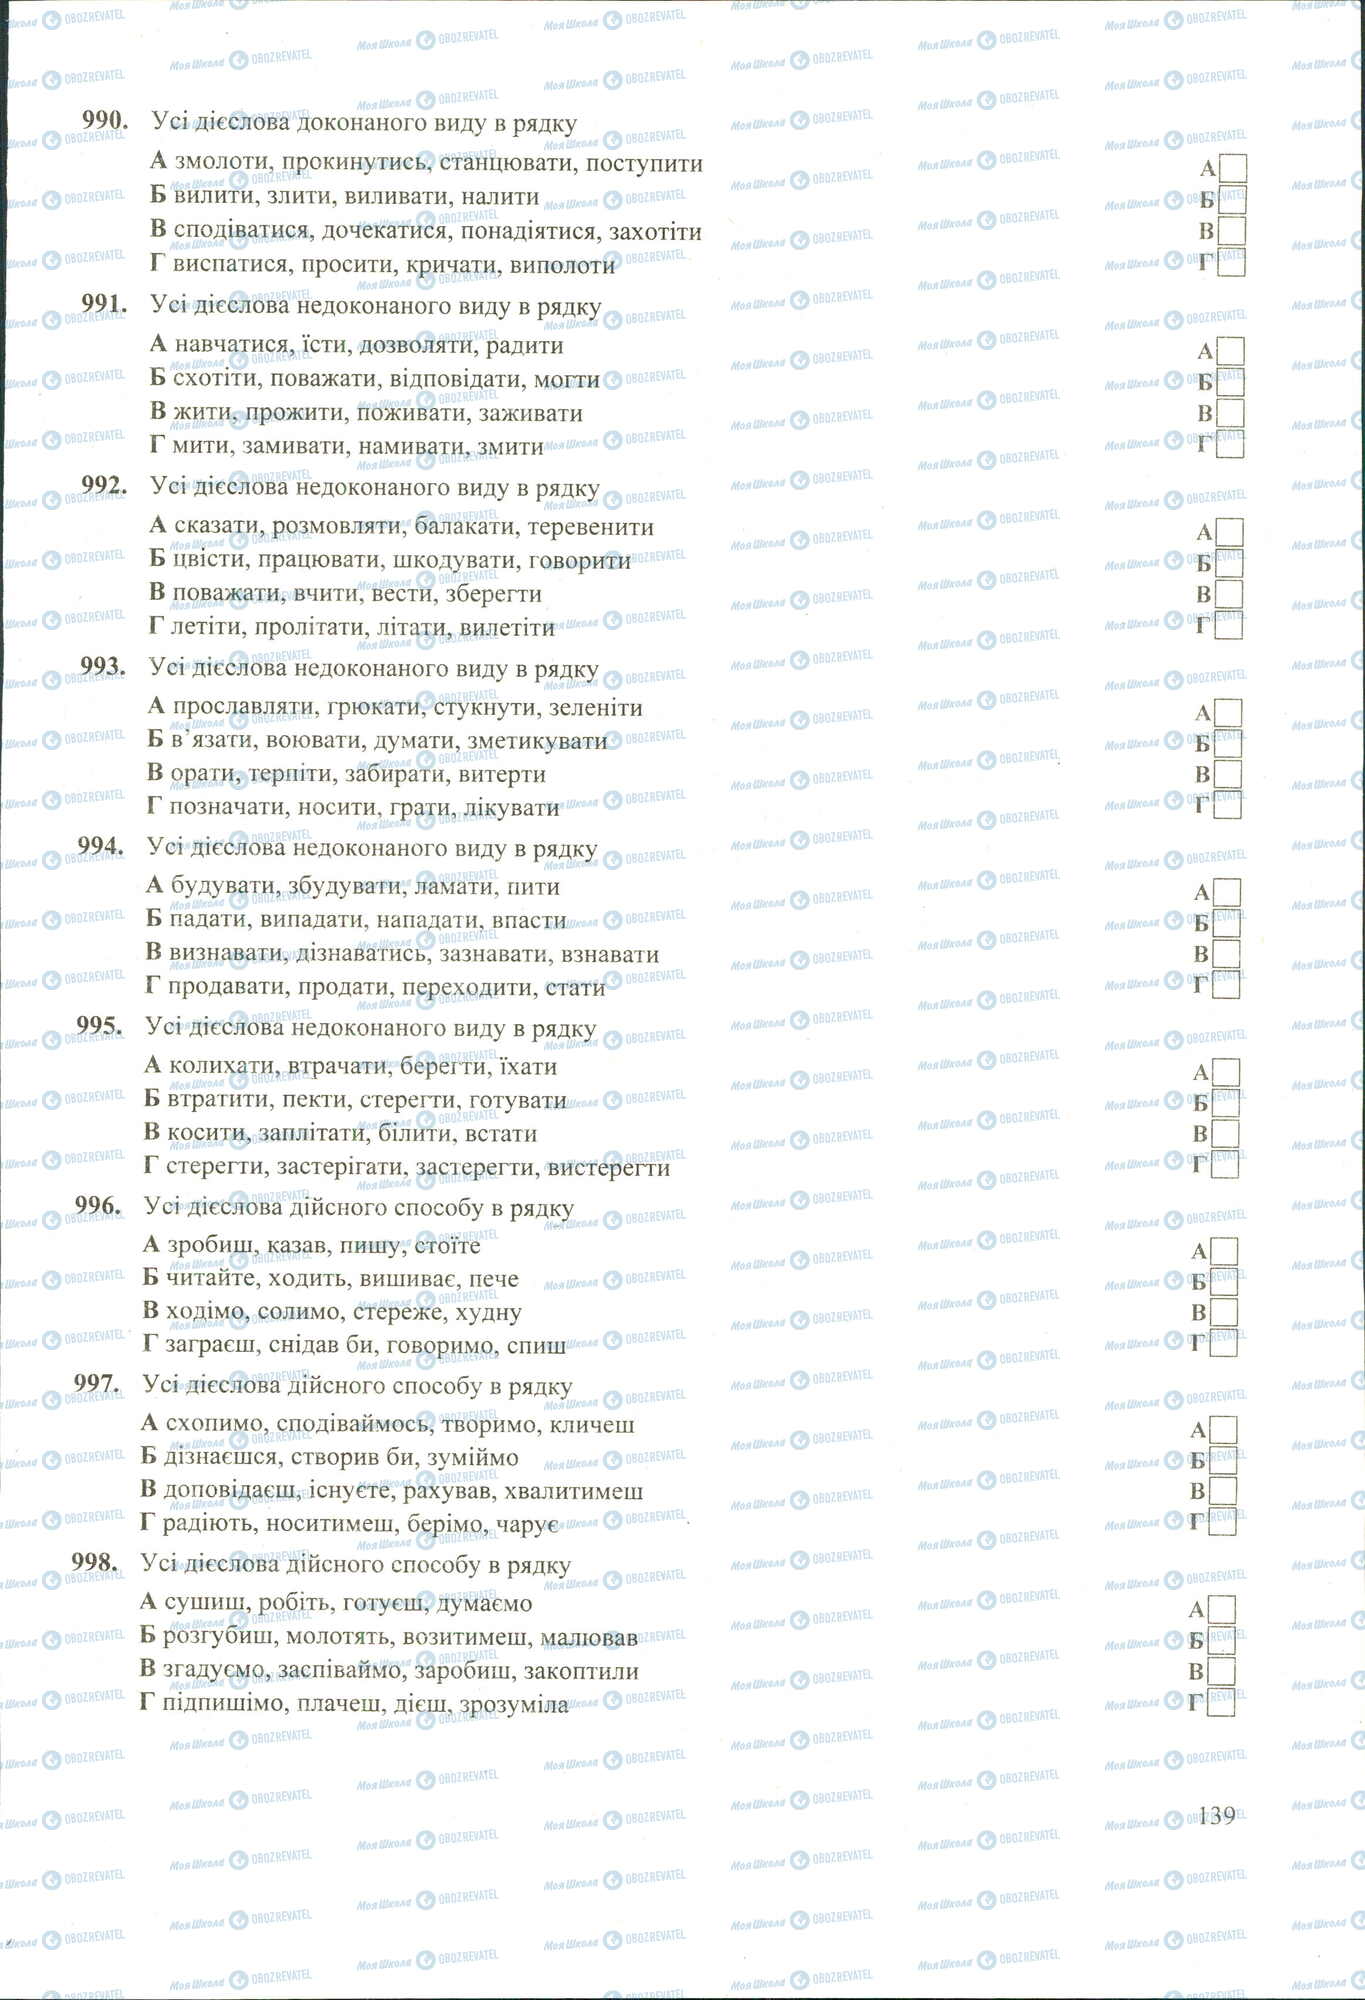 ЗНО Укр мова 11 класс страница 990-998